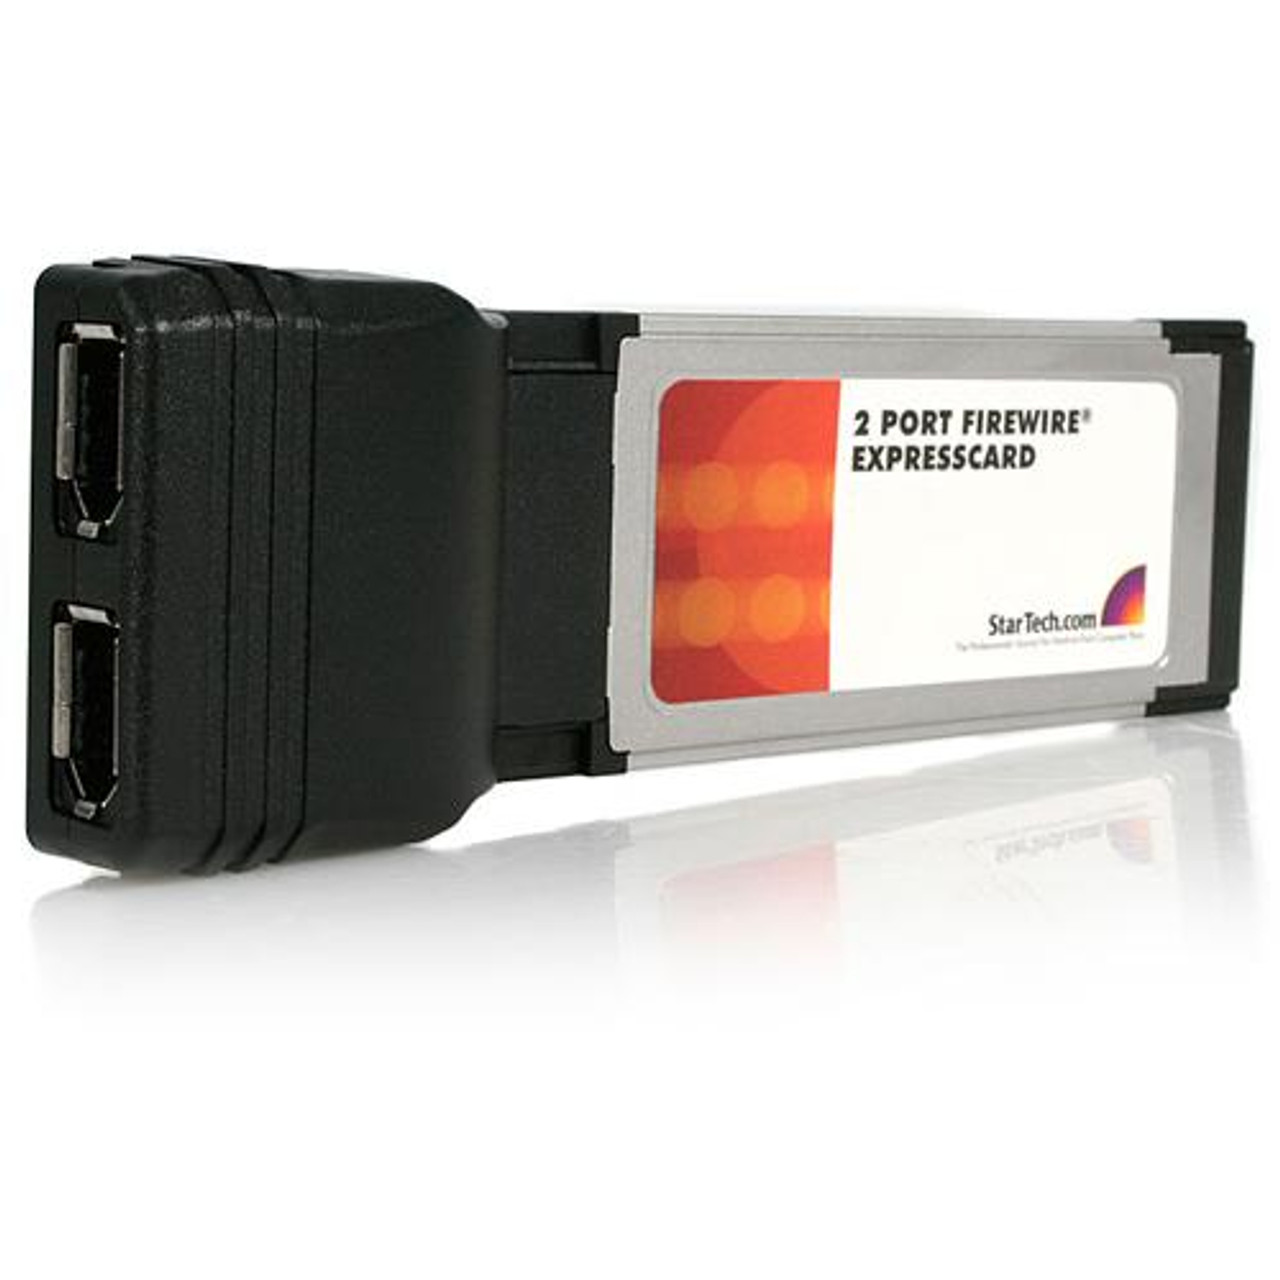 EC13942A2 StarTech 2 Port ExpressCard 1394a FireWire Adapter Card 2 x 6-pin Female IEEE 1394a FireWire Plug-in Module